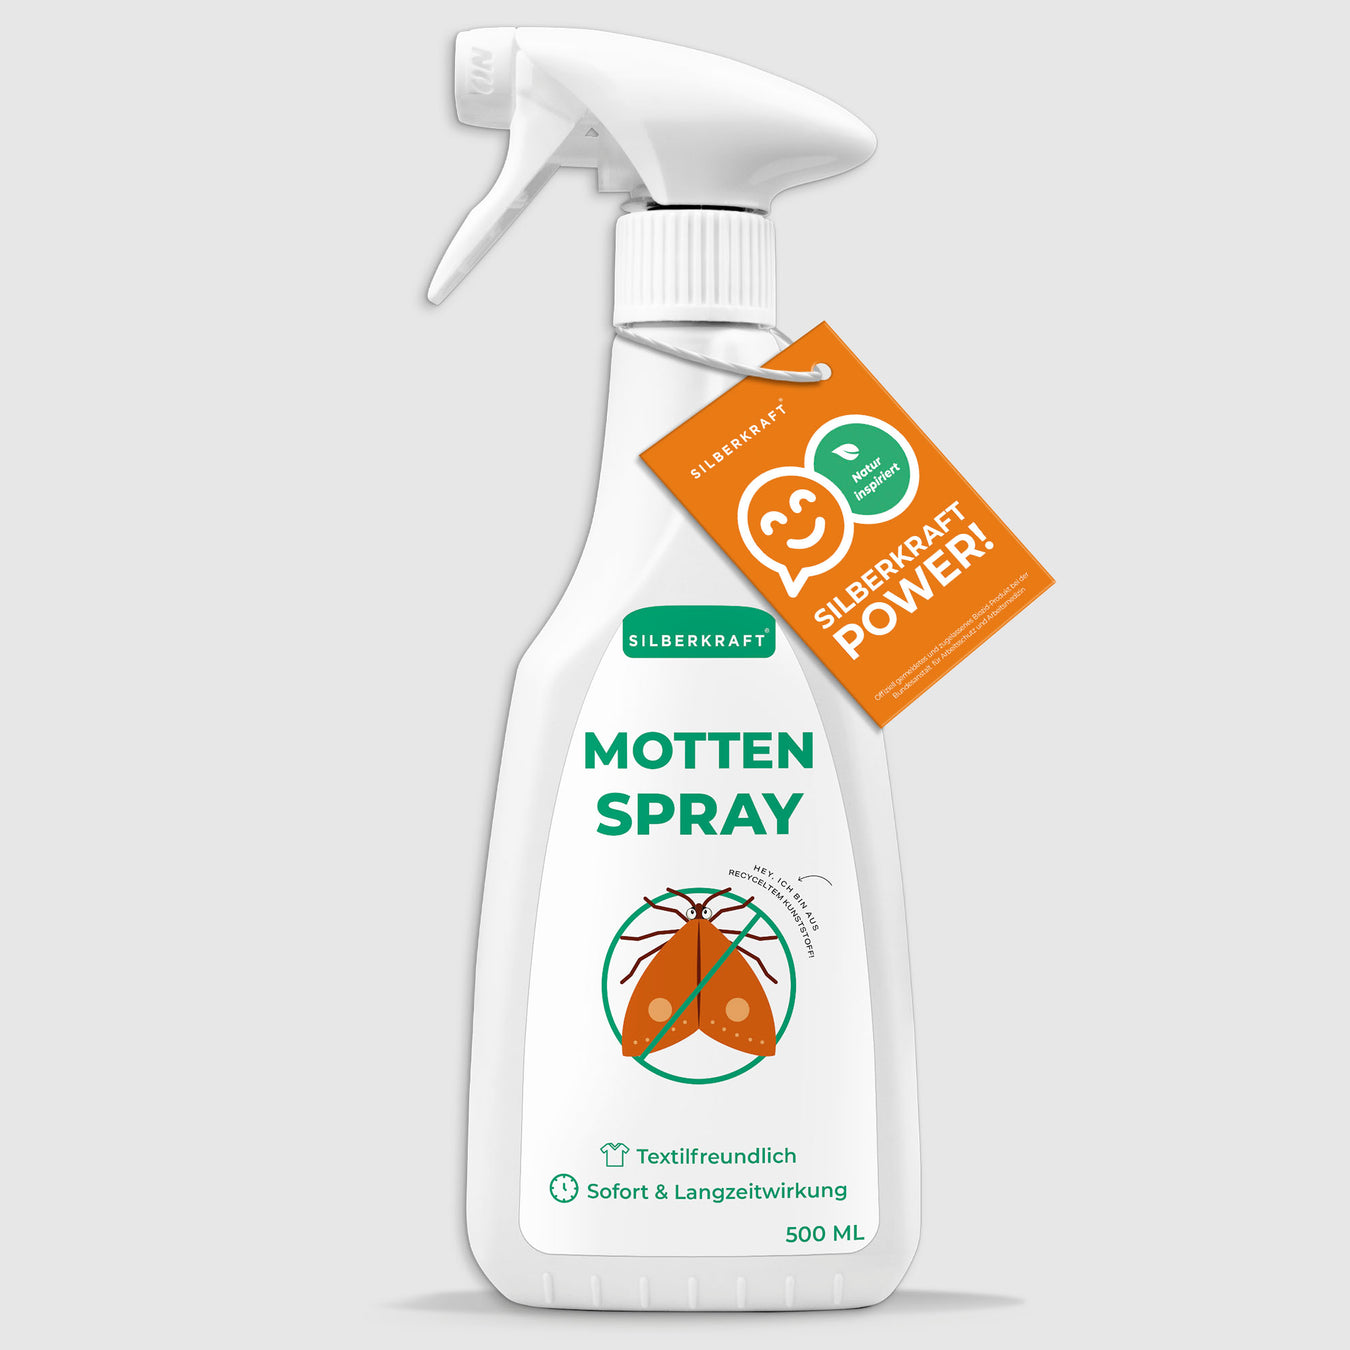 Acheter un spray anti-mites en ligne ✔️ Lutte contre les mites